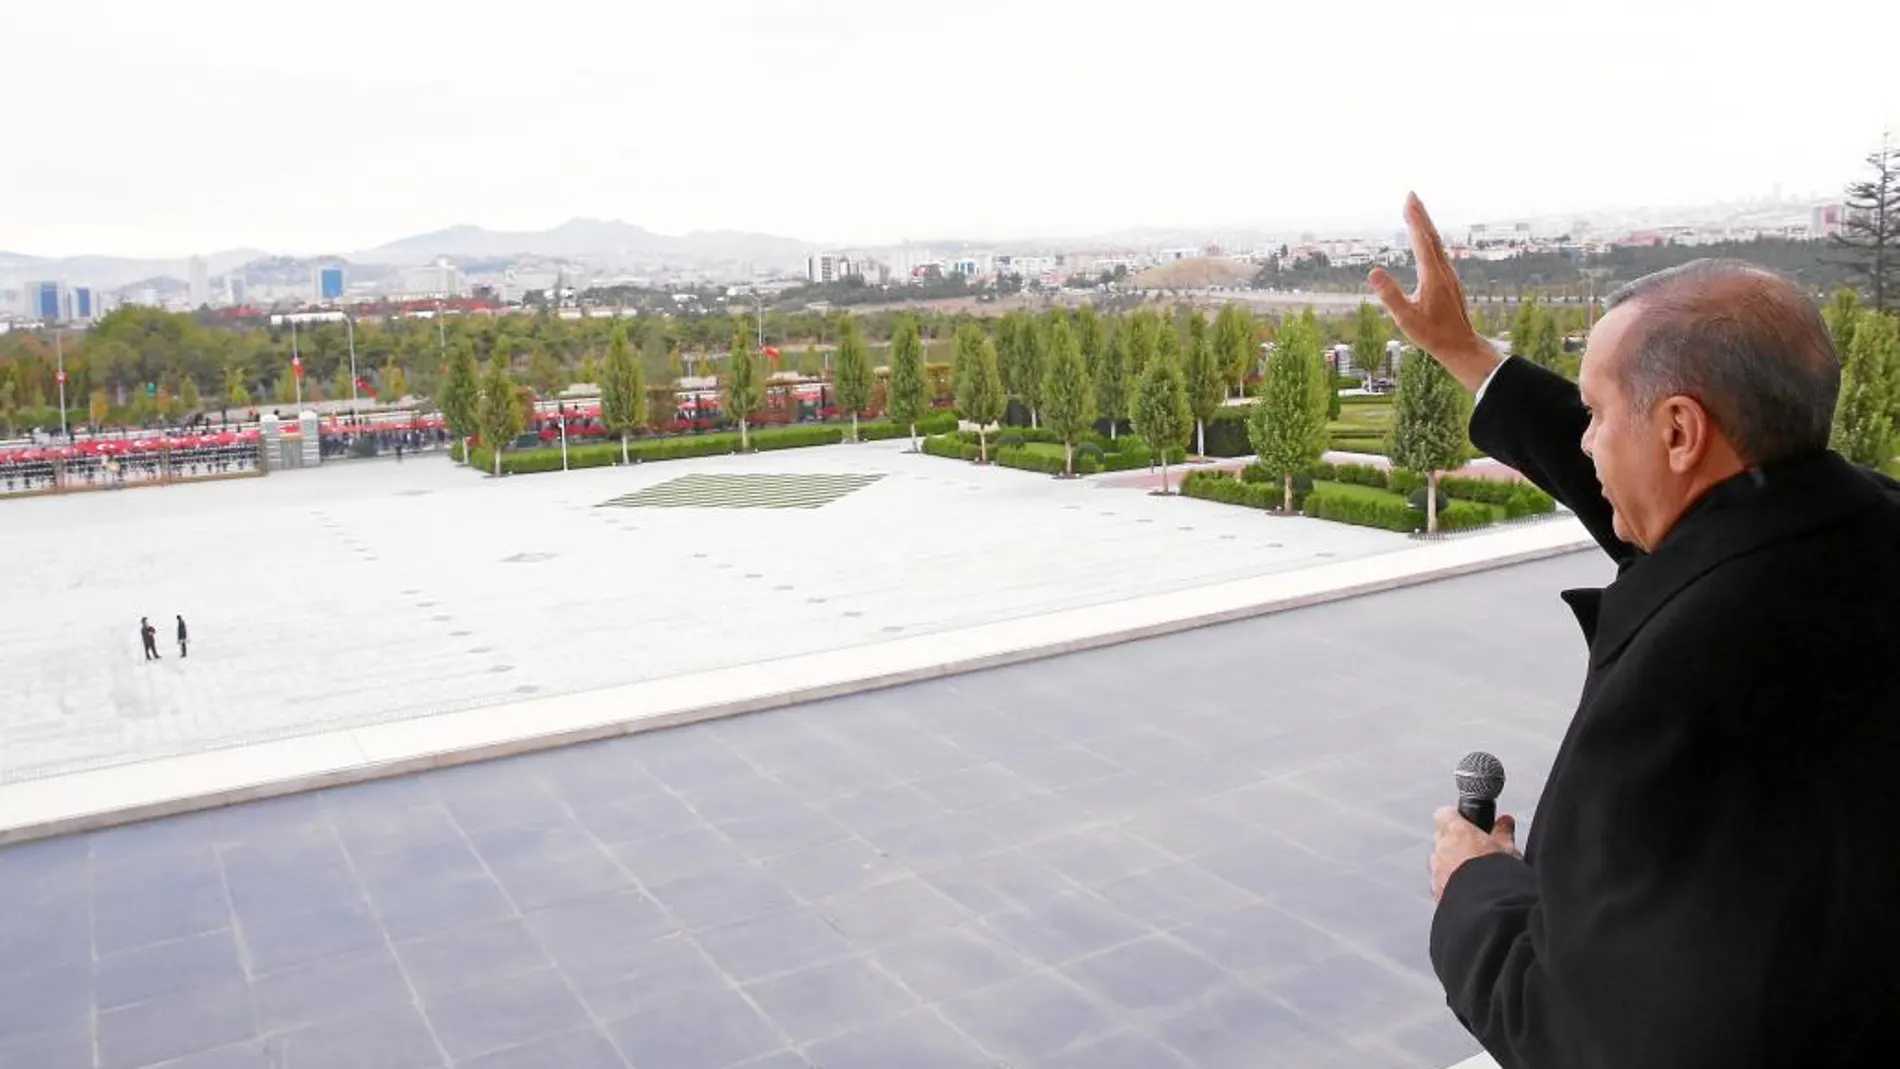 Recep Tayyip Erdogan saluda a unos seguidores al otro lado del monumental patio de su palacio